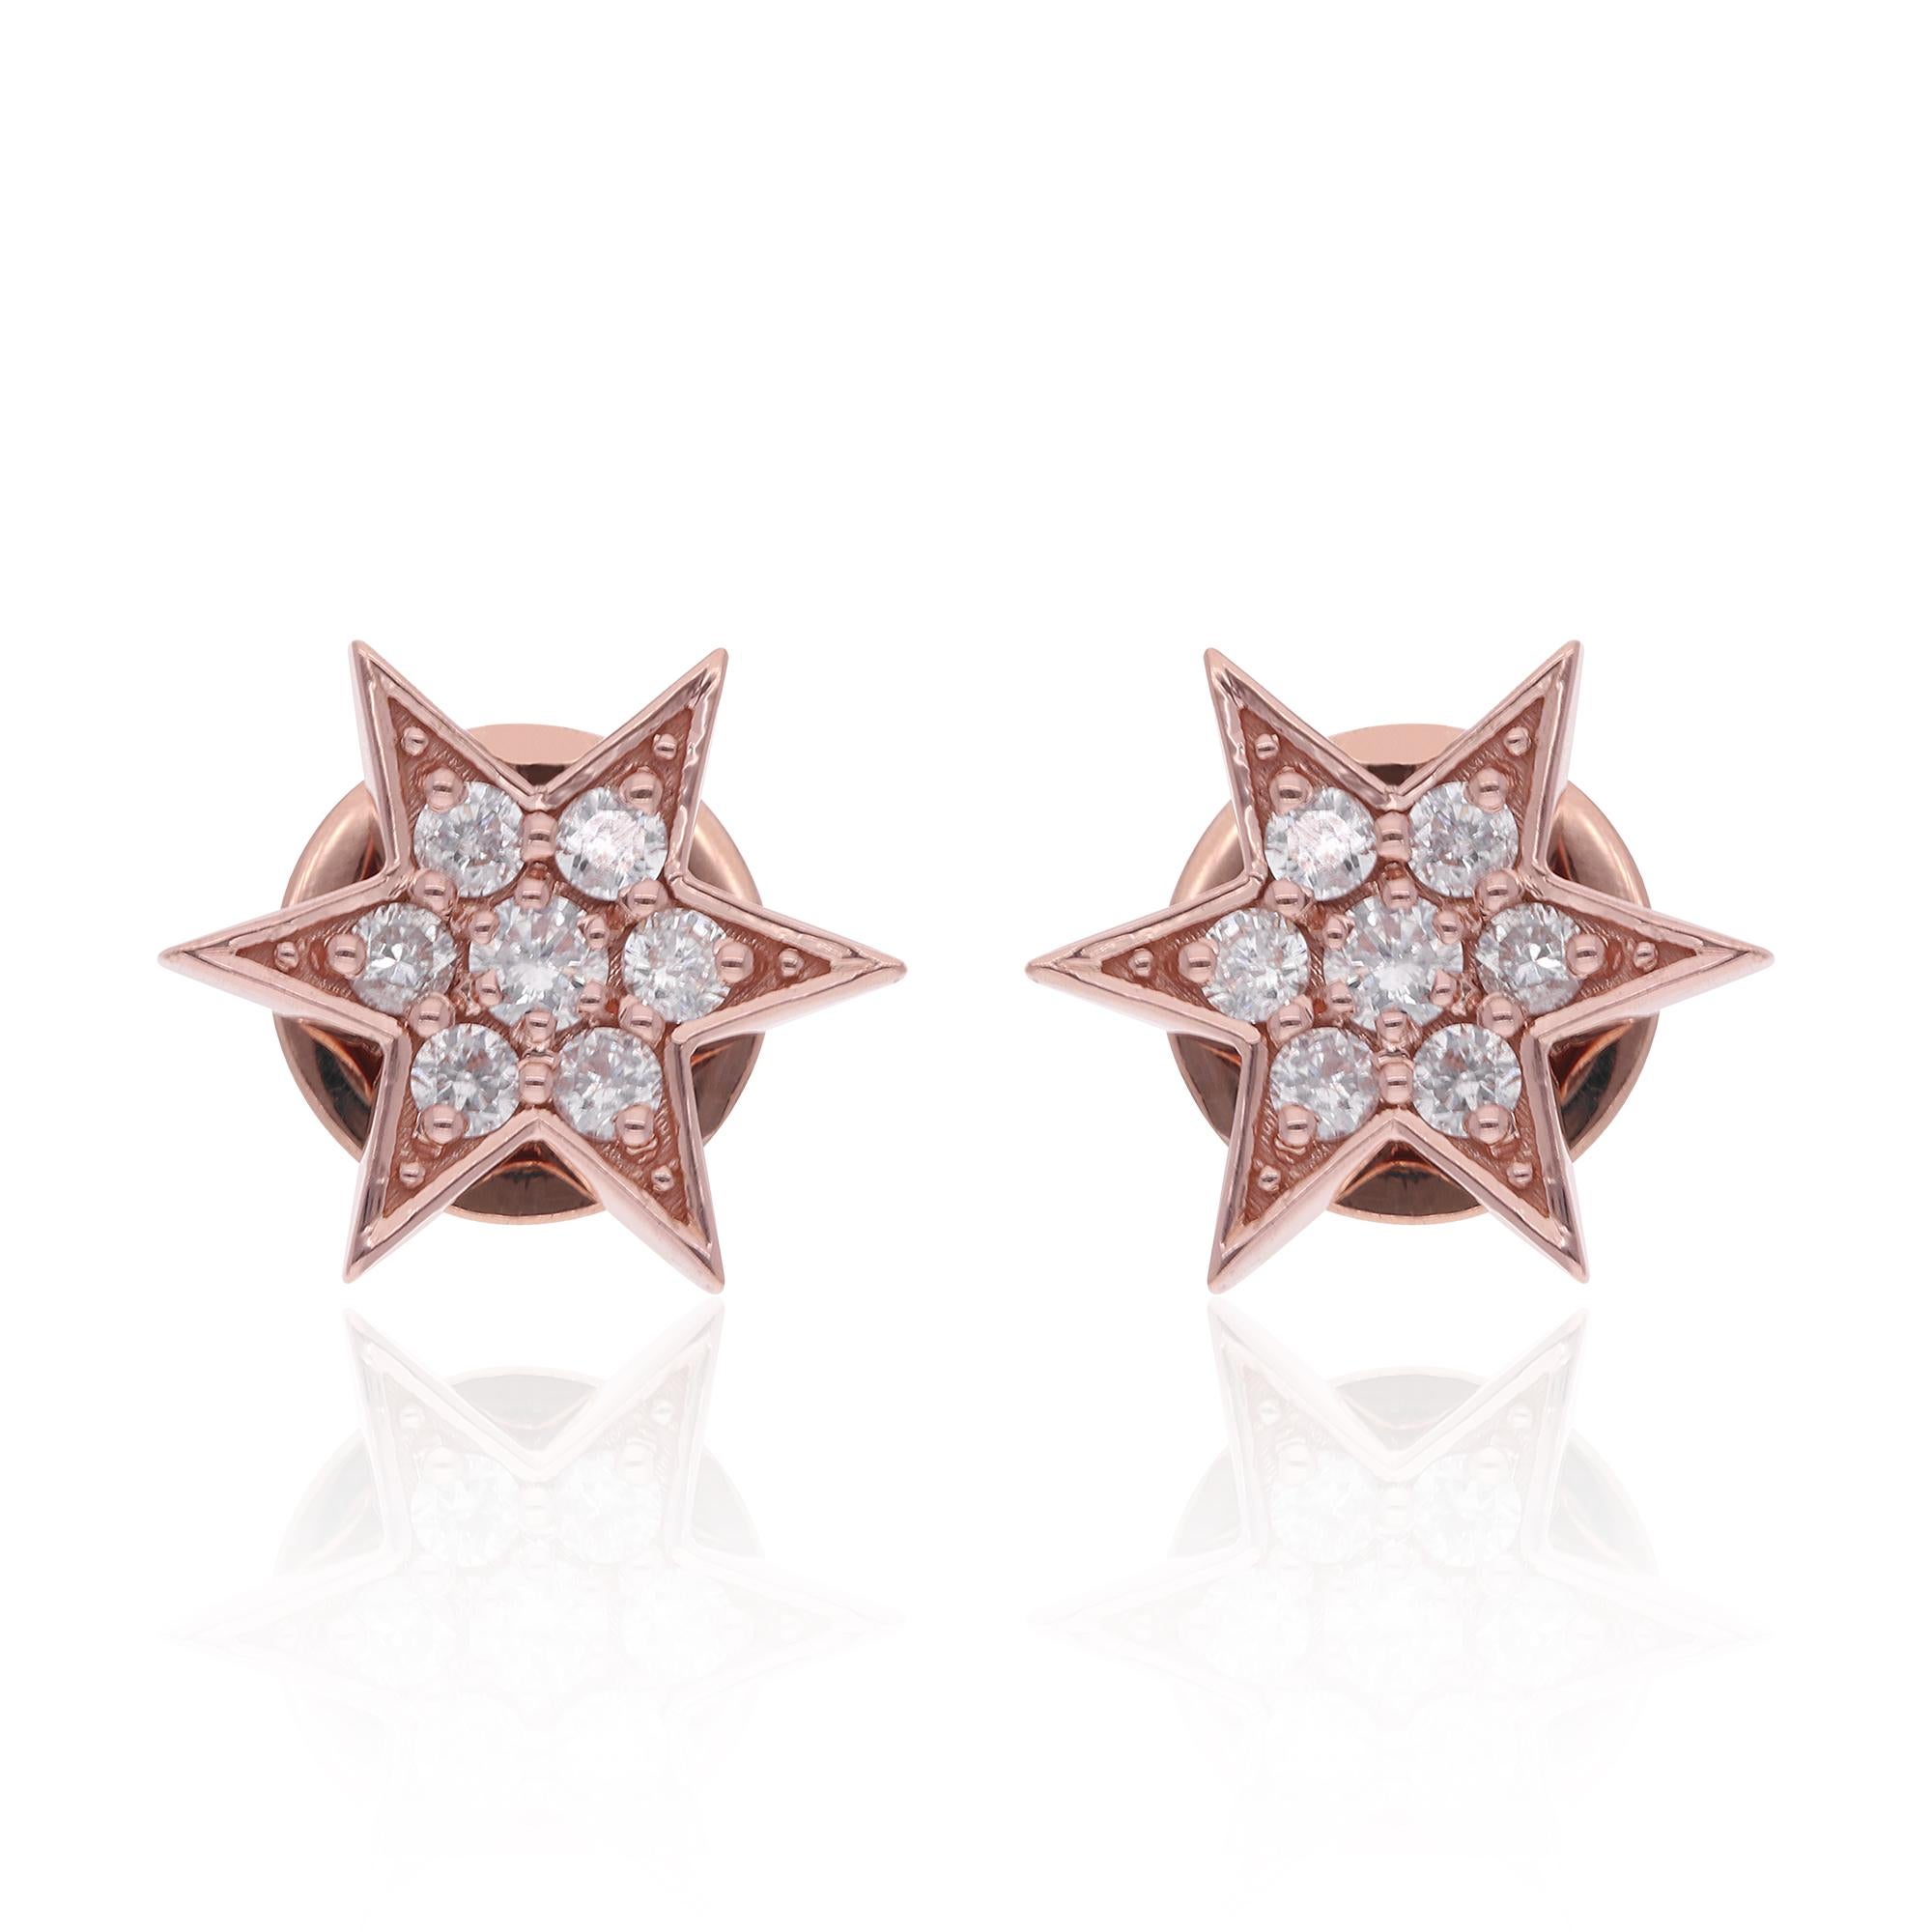 Diese exquisiten Ohrstecker bestechen durch ihr elegantes Starburst-Design. Jeder Ohrring zeigt einen zentralen Diamanten, der von kleineren Diamanten umgeben ist und ein strahlendes Starburst-Muster bildet.

Artikel-Code :- SEE-14377